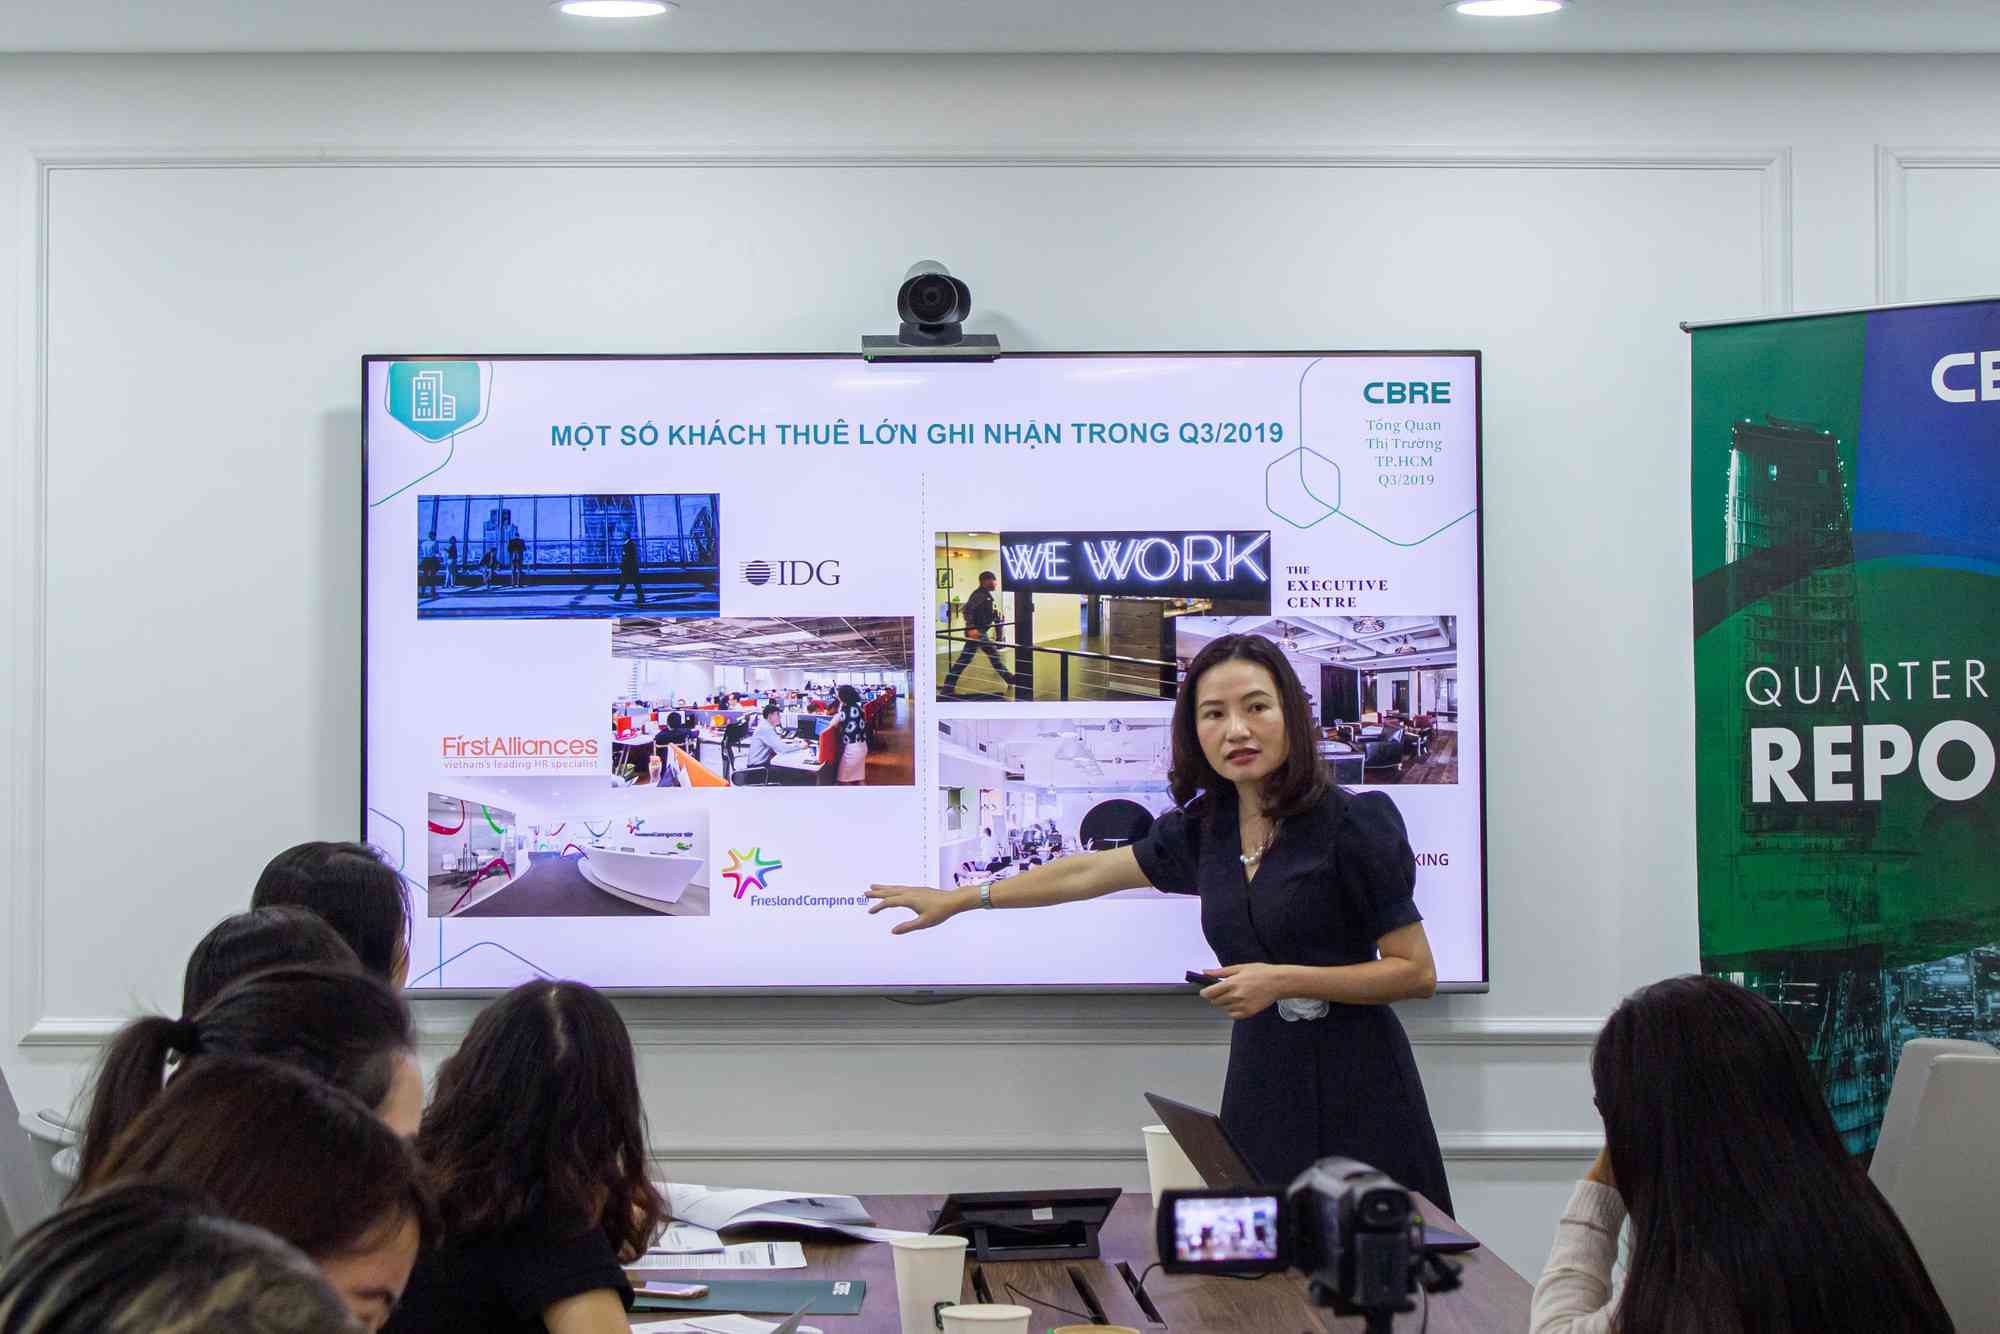 Khách thuê văn phòng trong quý III-2019 ở TP HCM chủ yếu công ty công nghệ, khởi nghiệp... Ảnh: Lam Giang